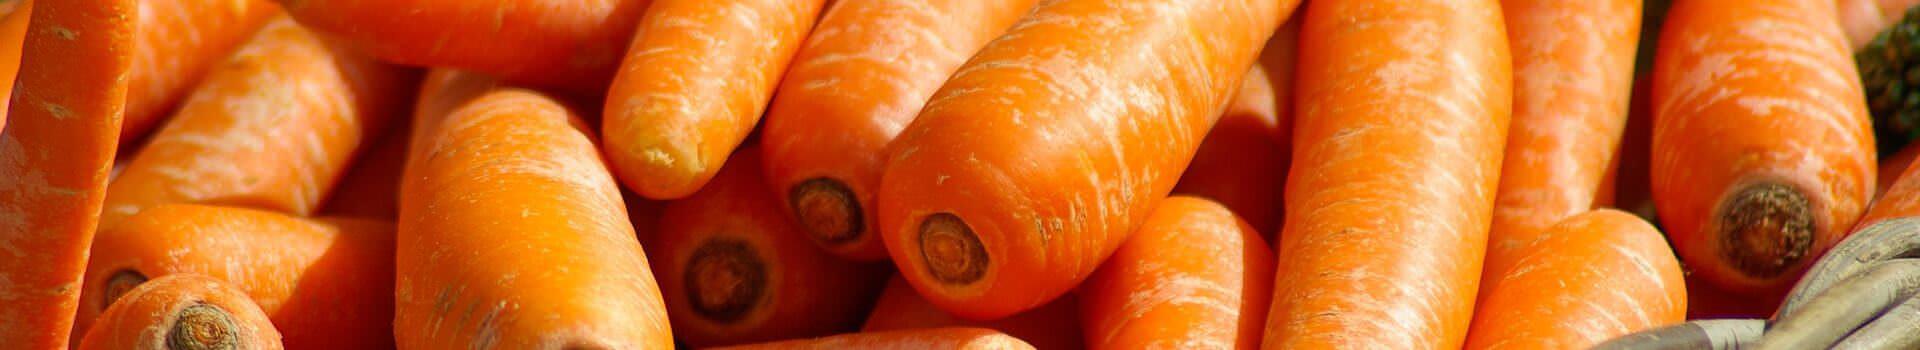 carrots-673184_1920